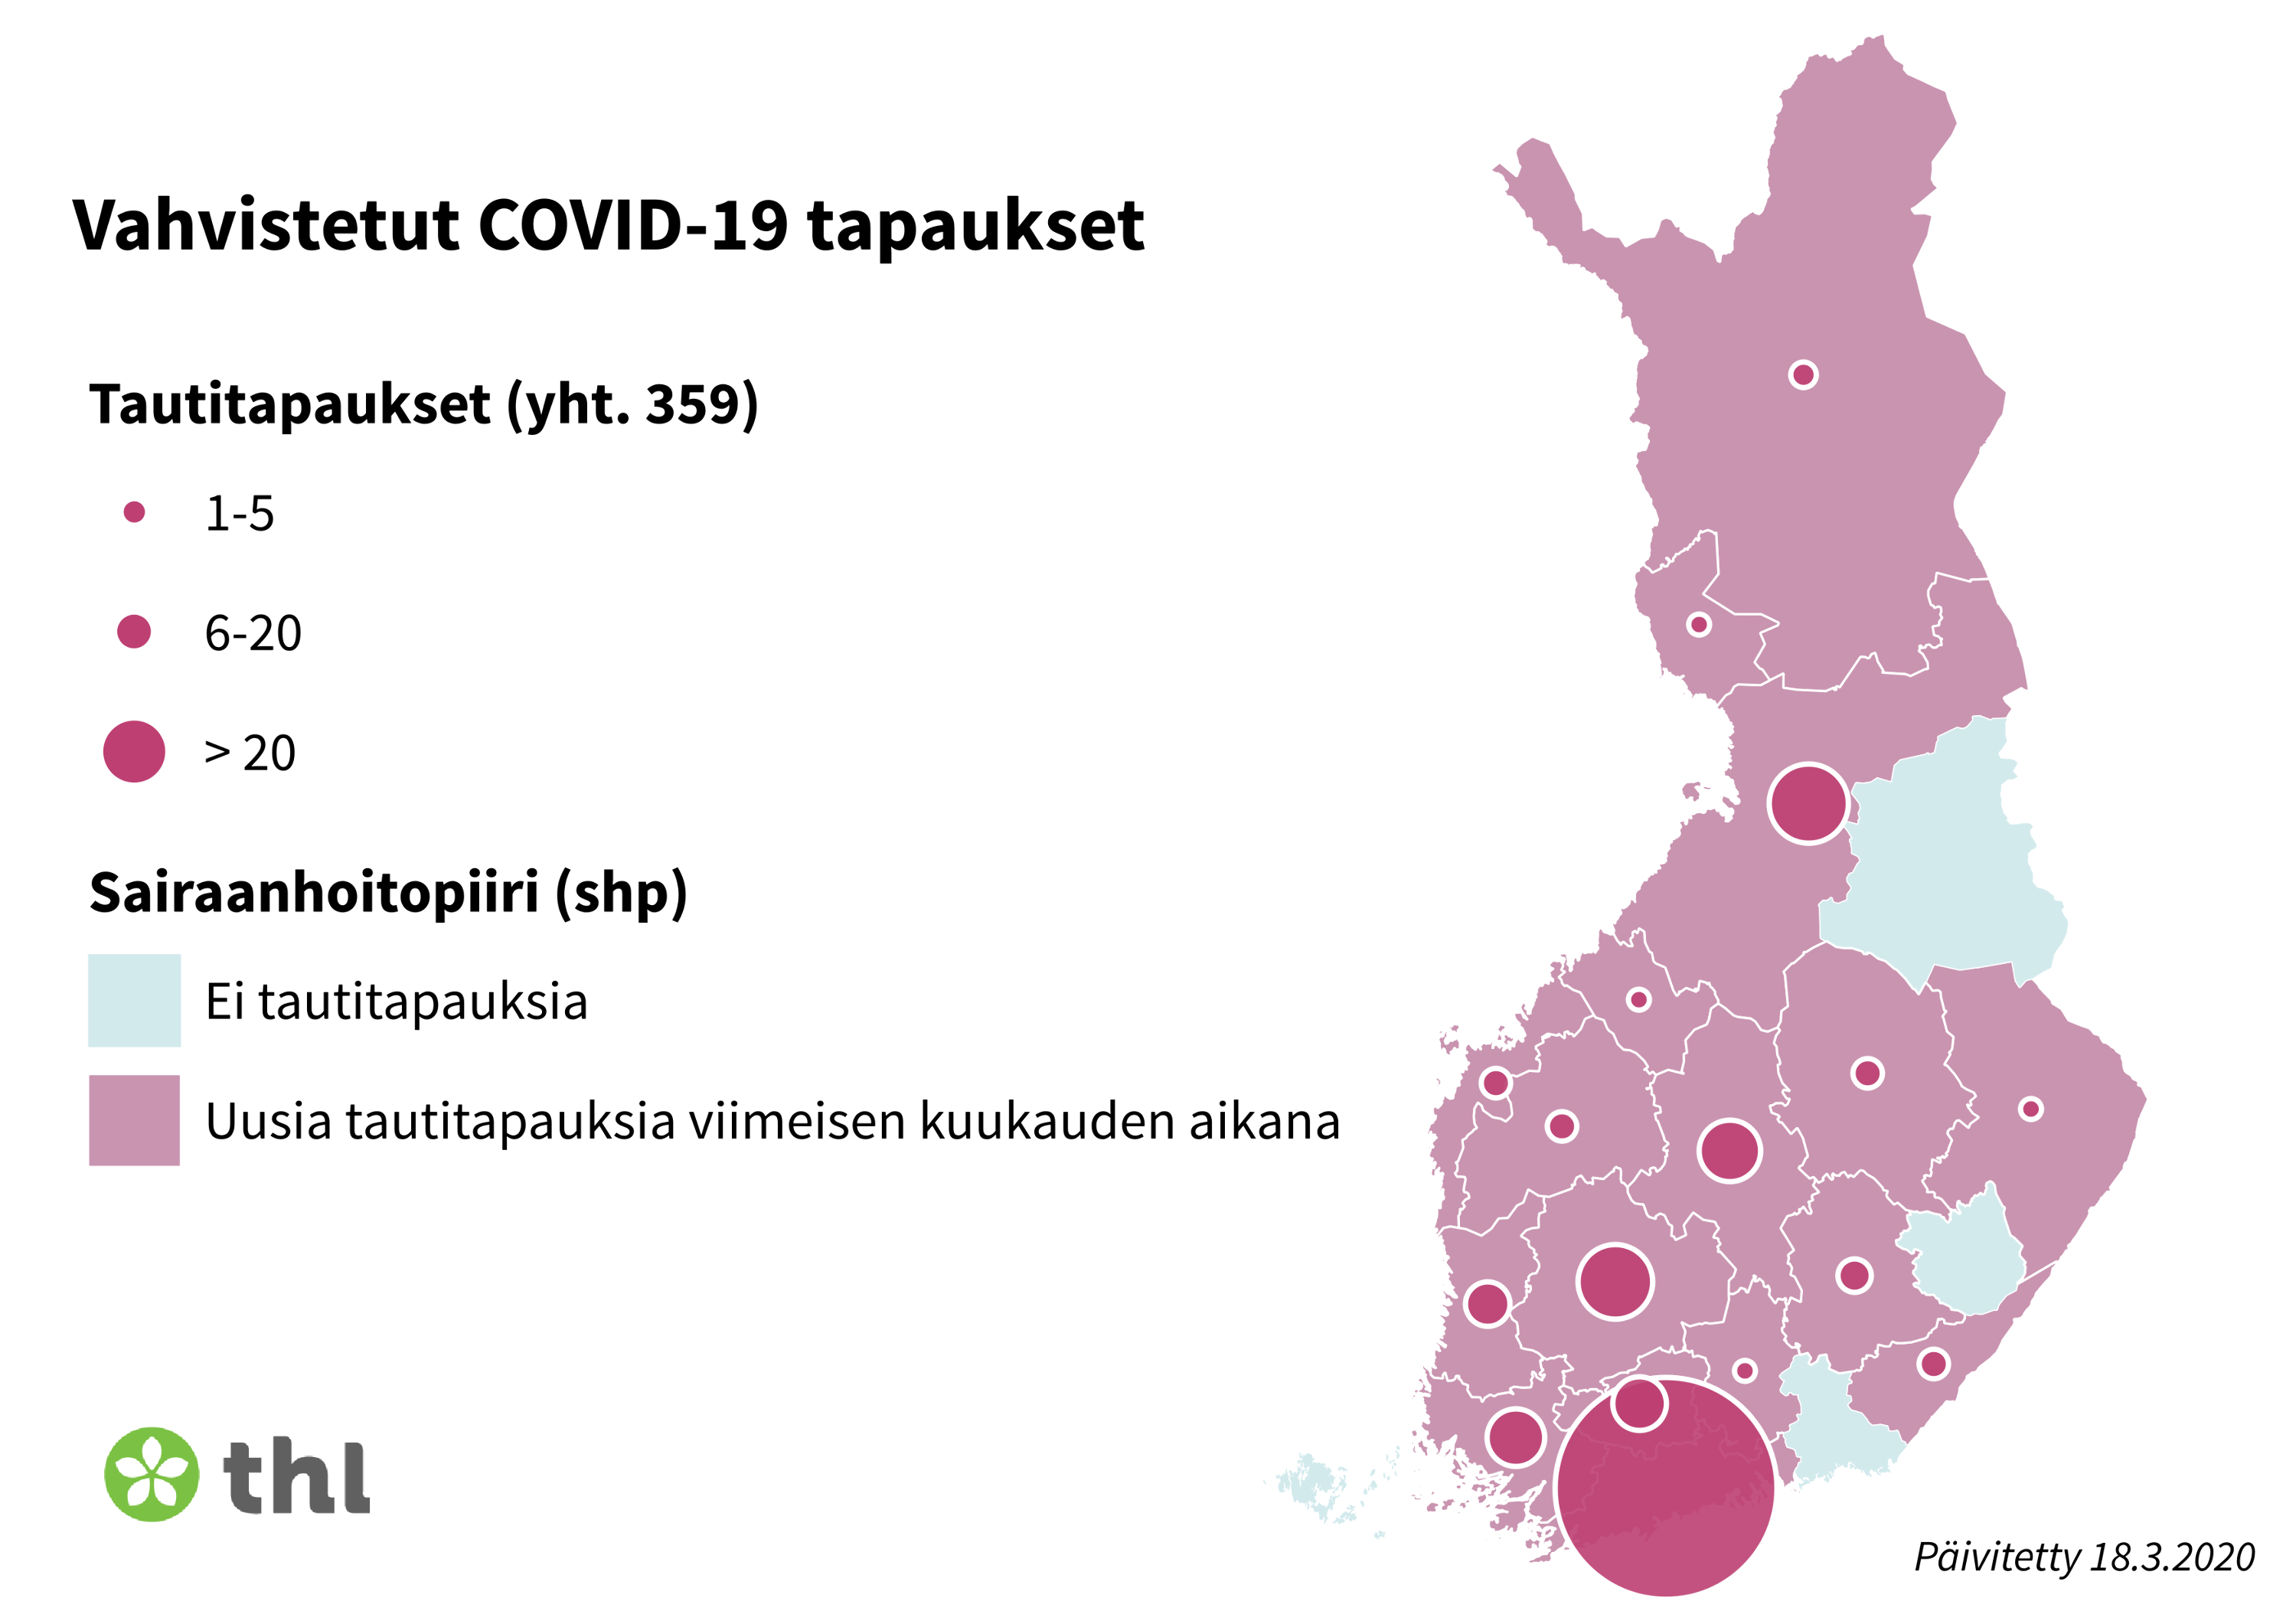 Заболевания COVID-19 в Финляндии по регионам